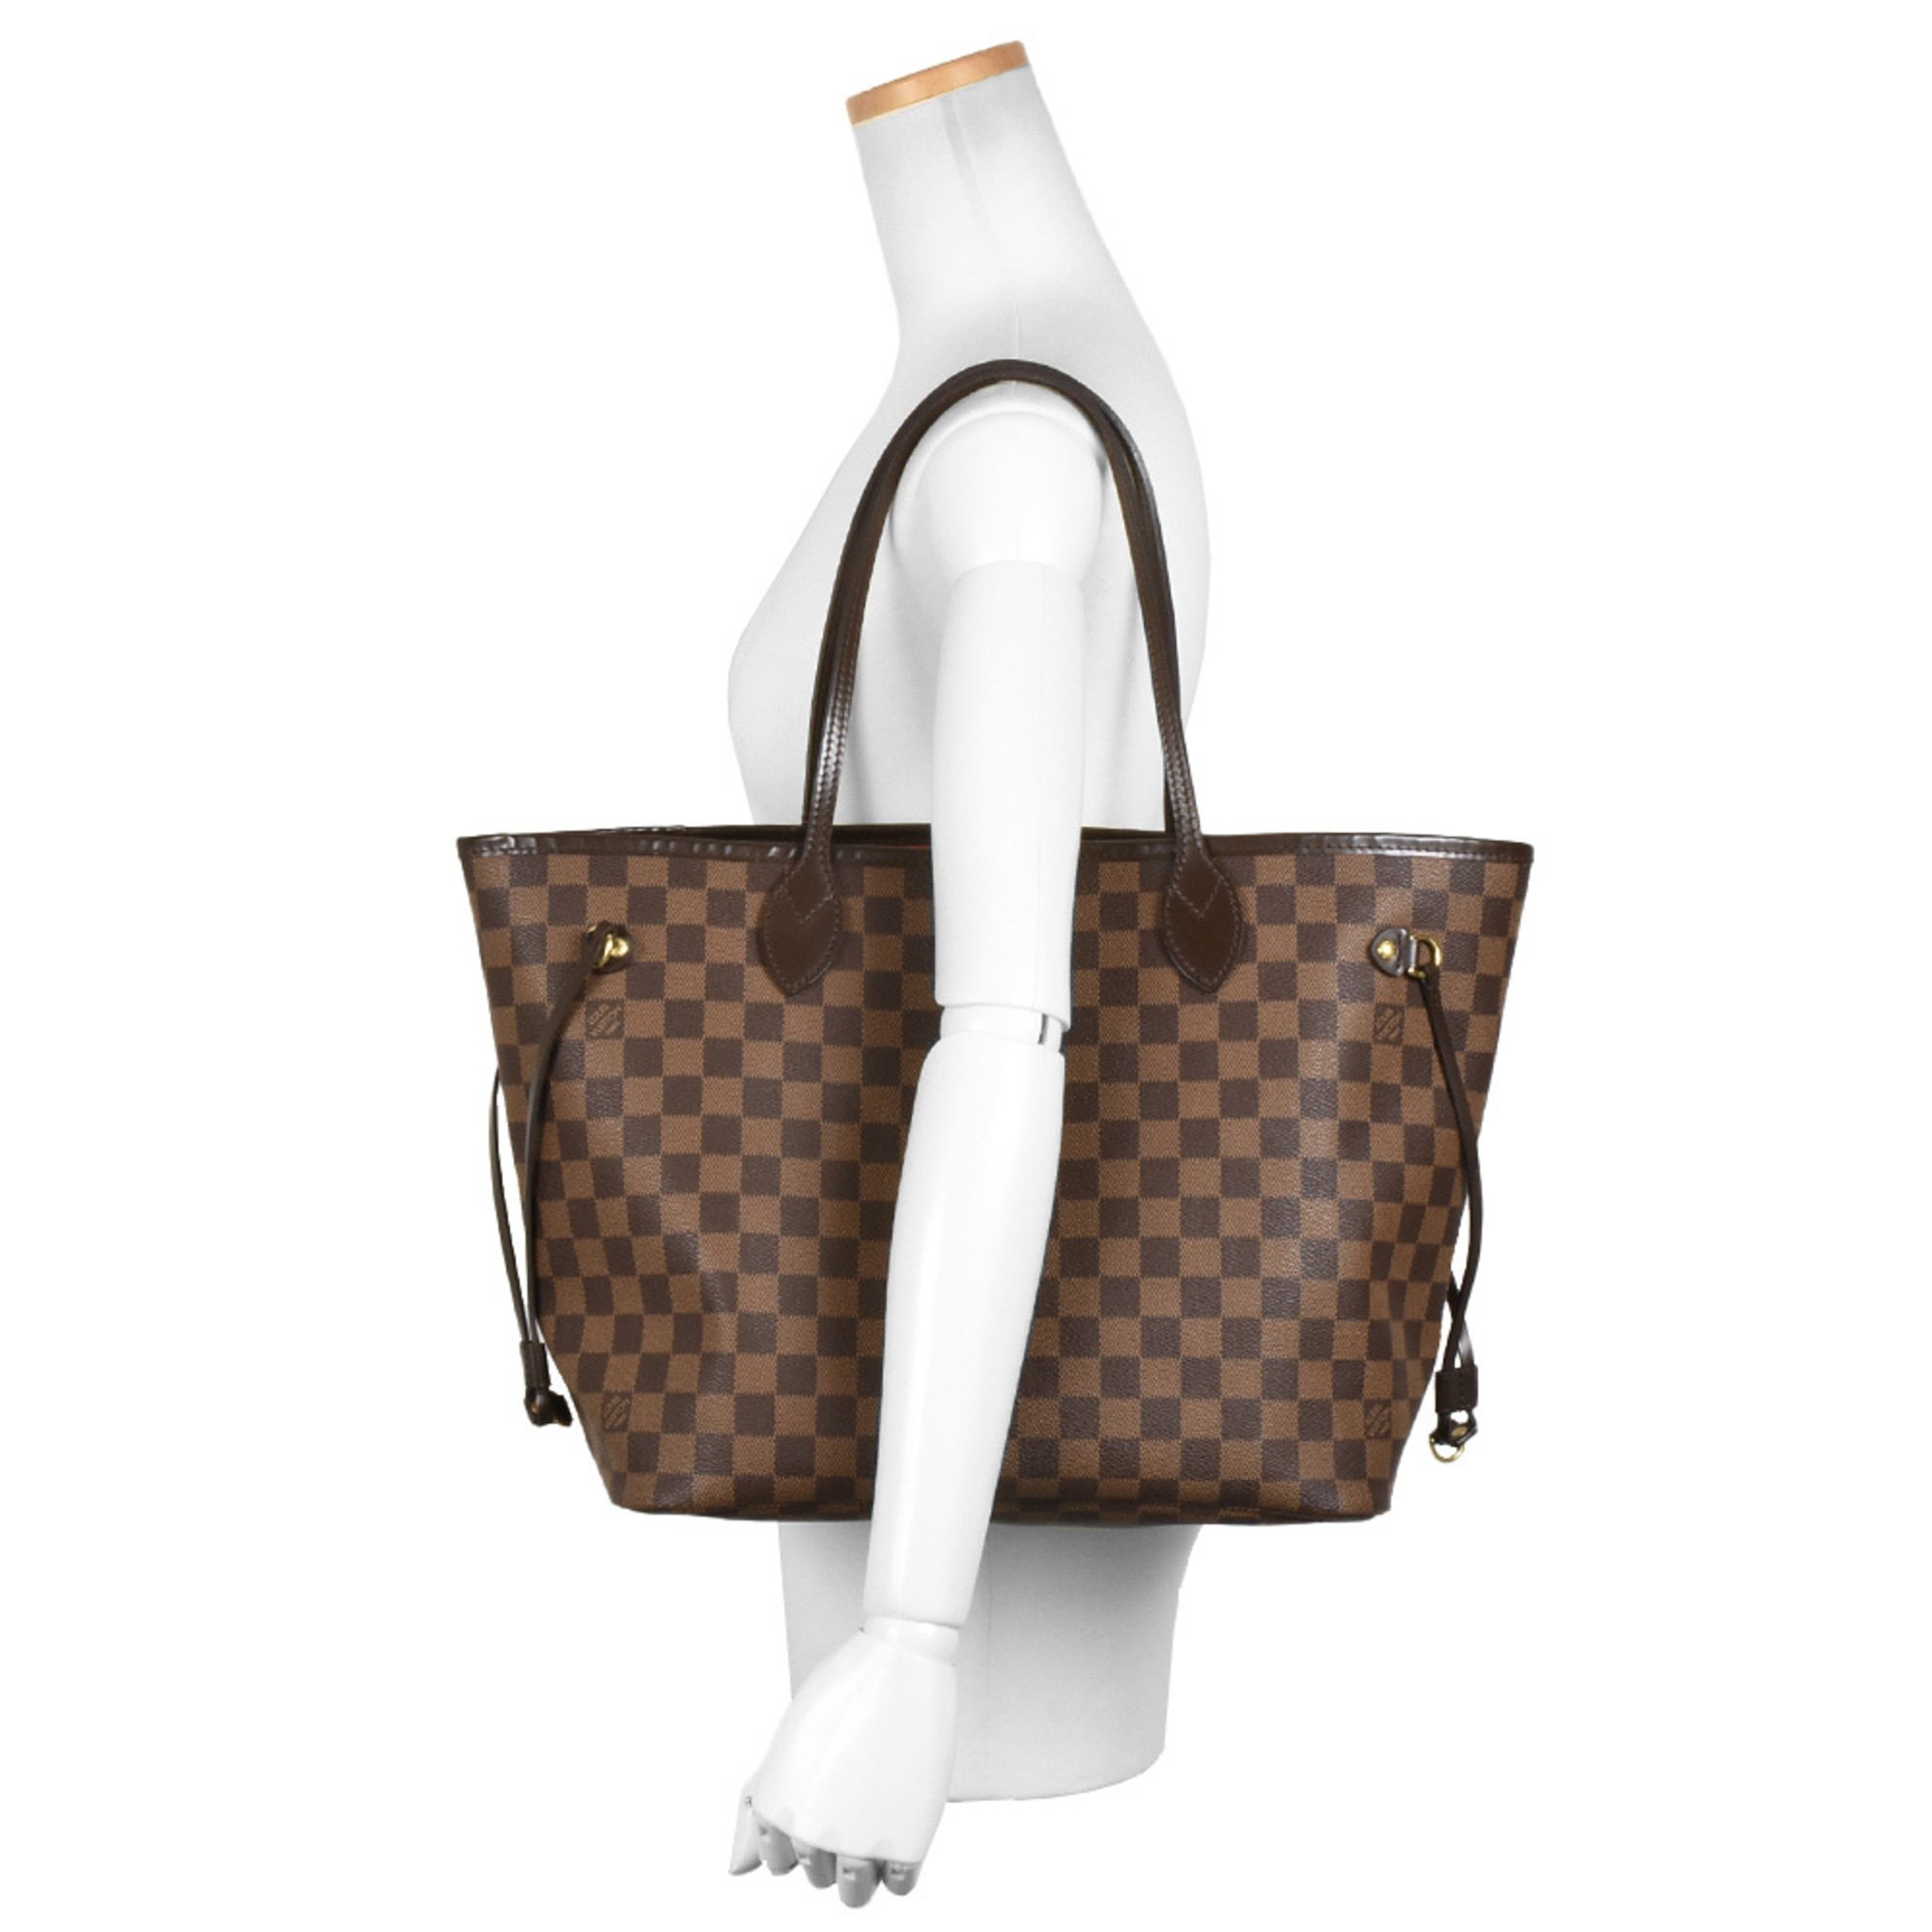 Louis Vuitton Neverfull MM Tote Bag Damier Ebene N51105 Cerise GI0123